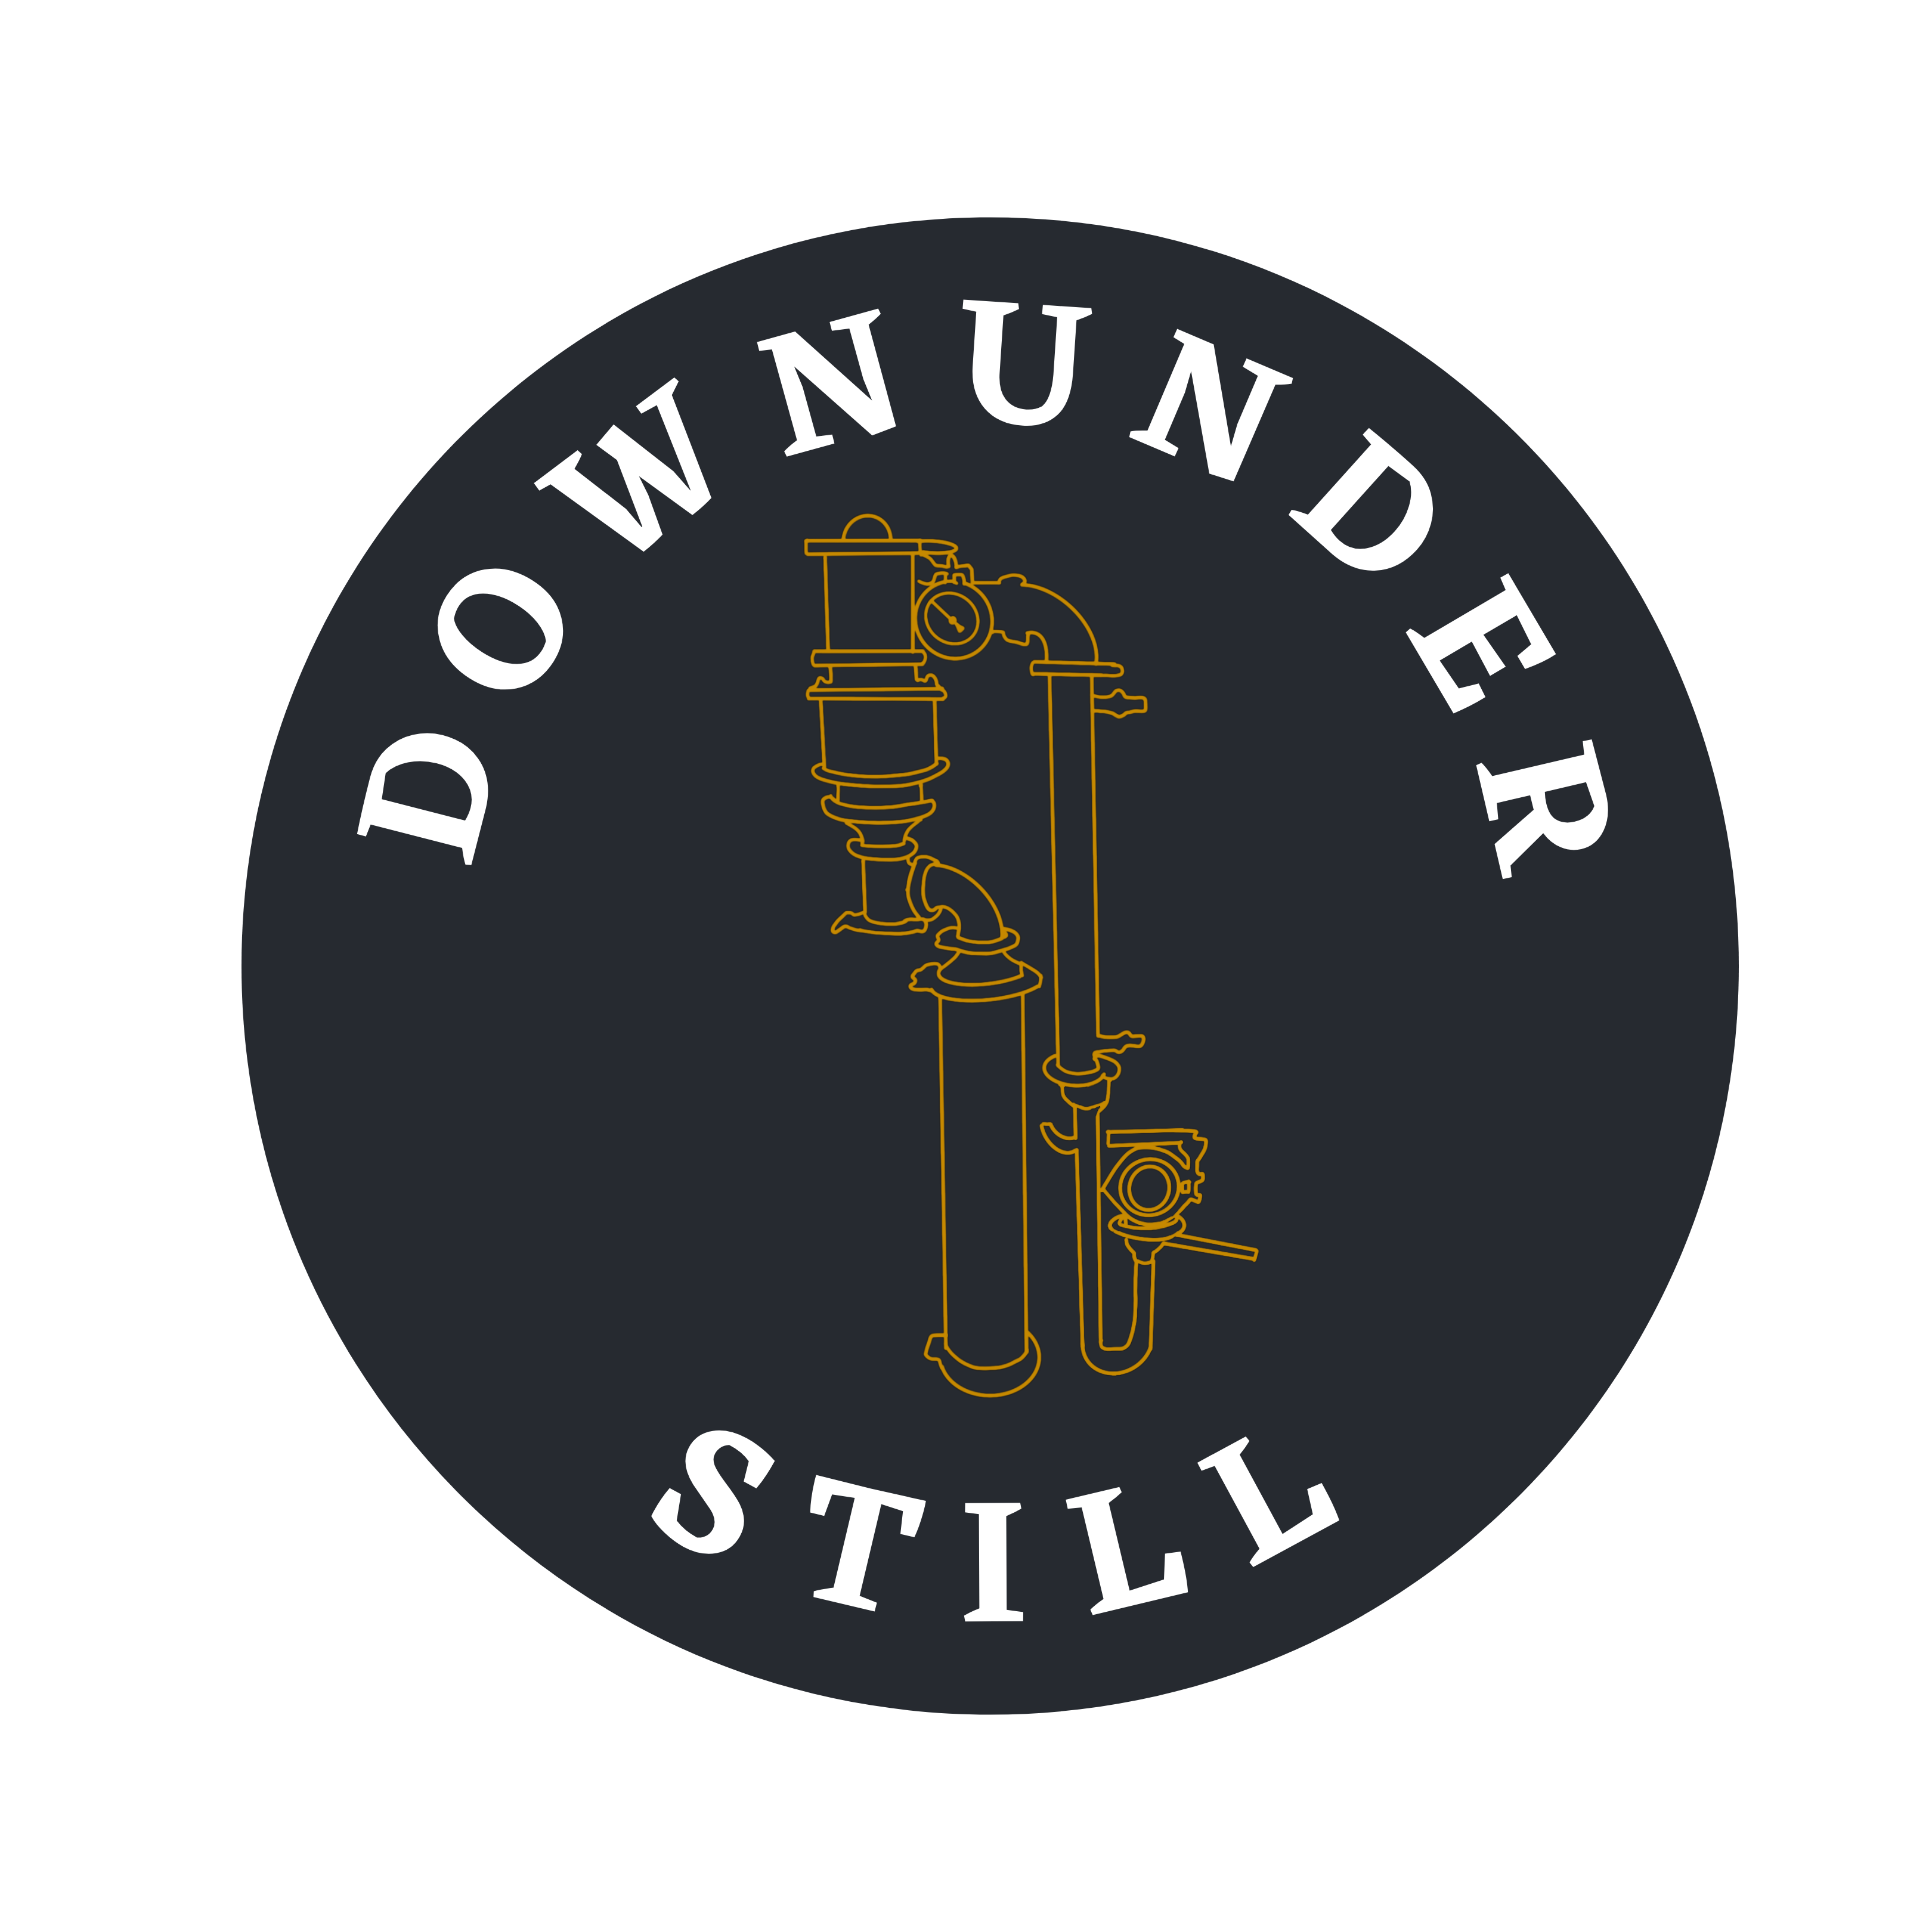 Downunder Still